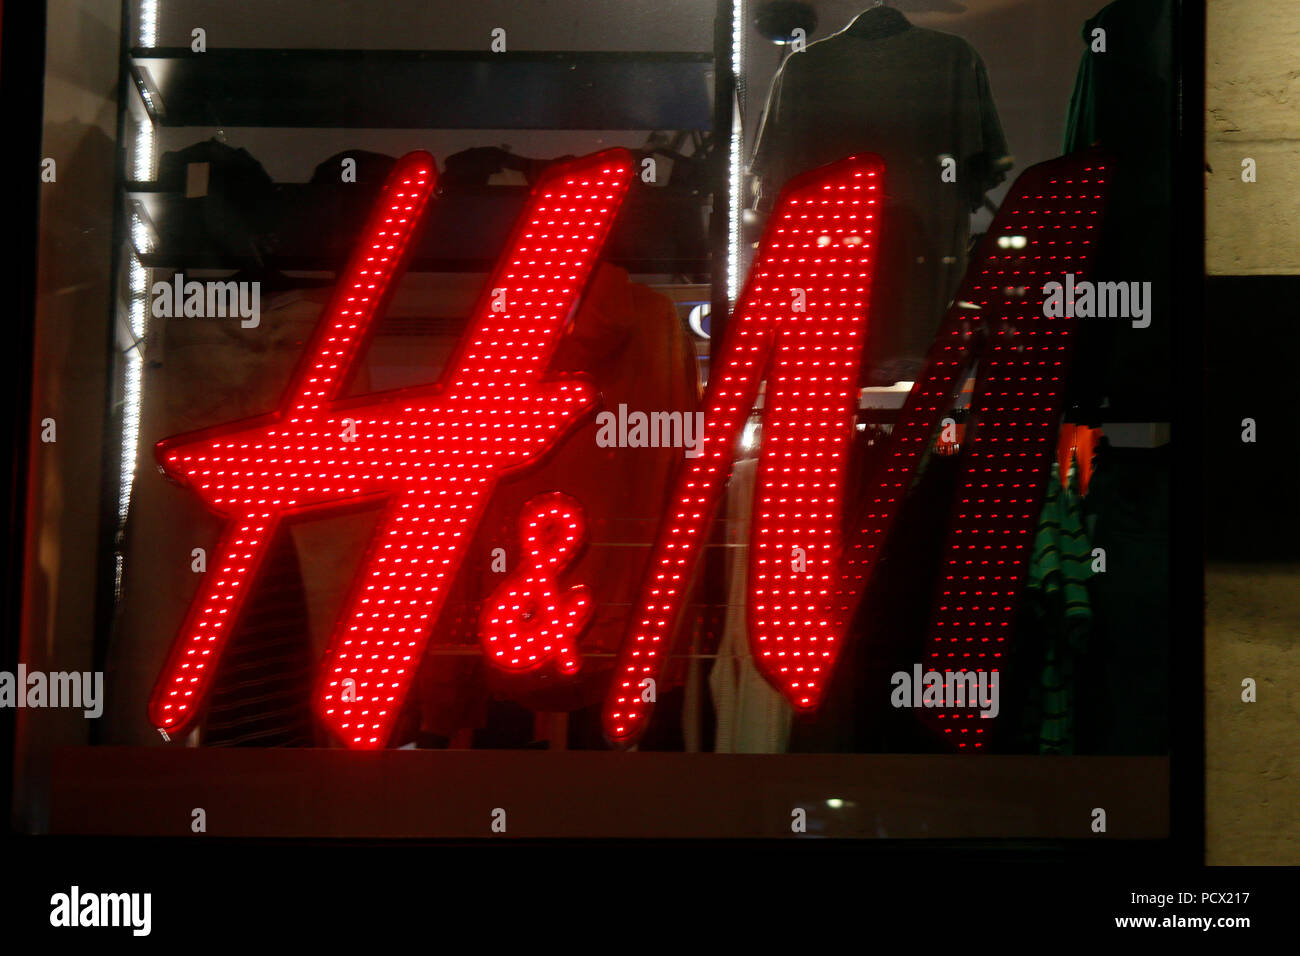 das Logo der Marke "H & M", Lissabon, Portugal Stock Photo - Alamy